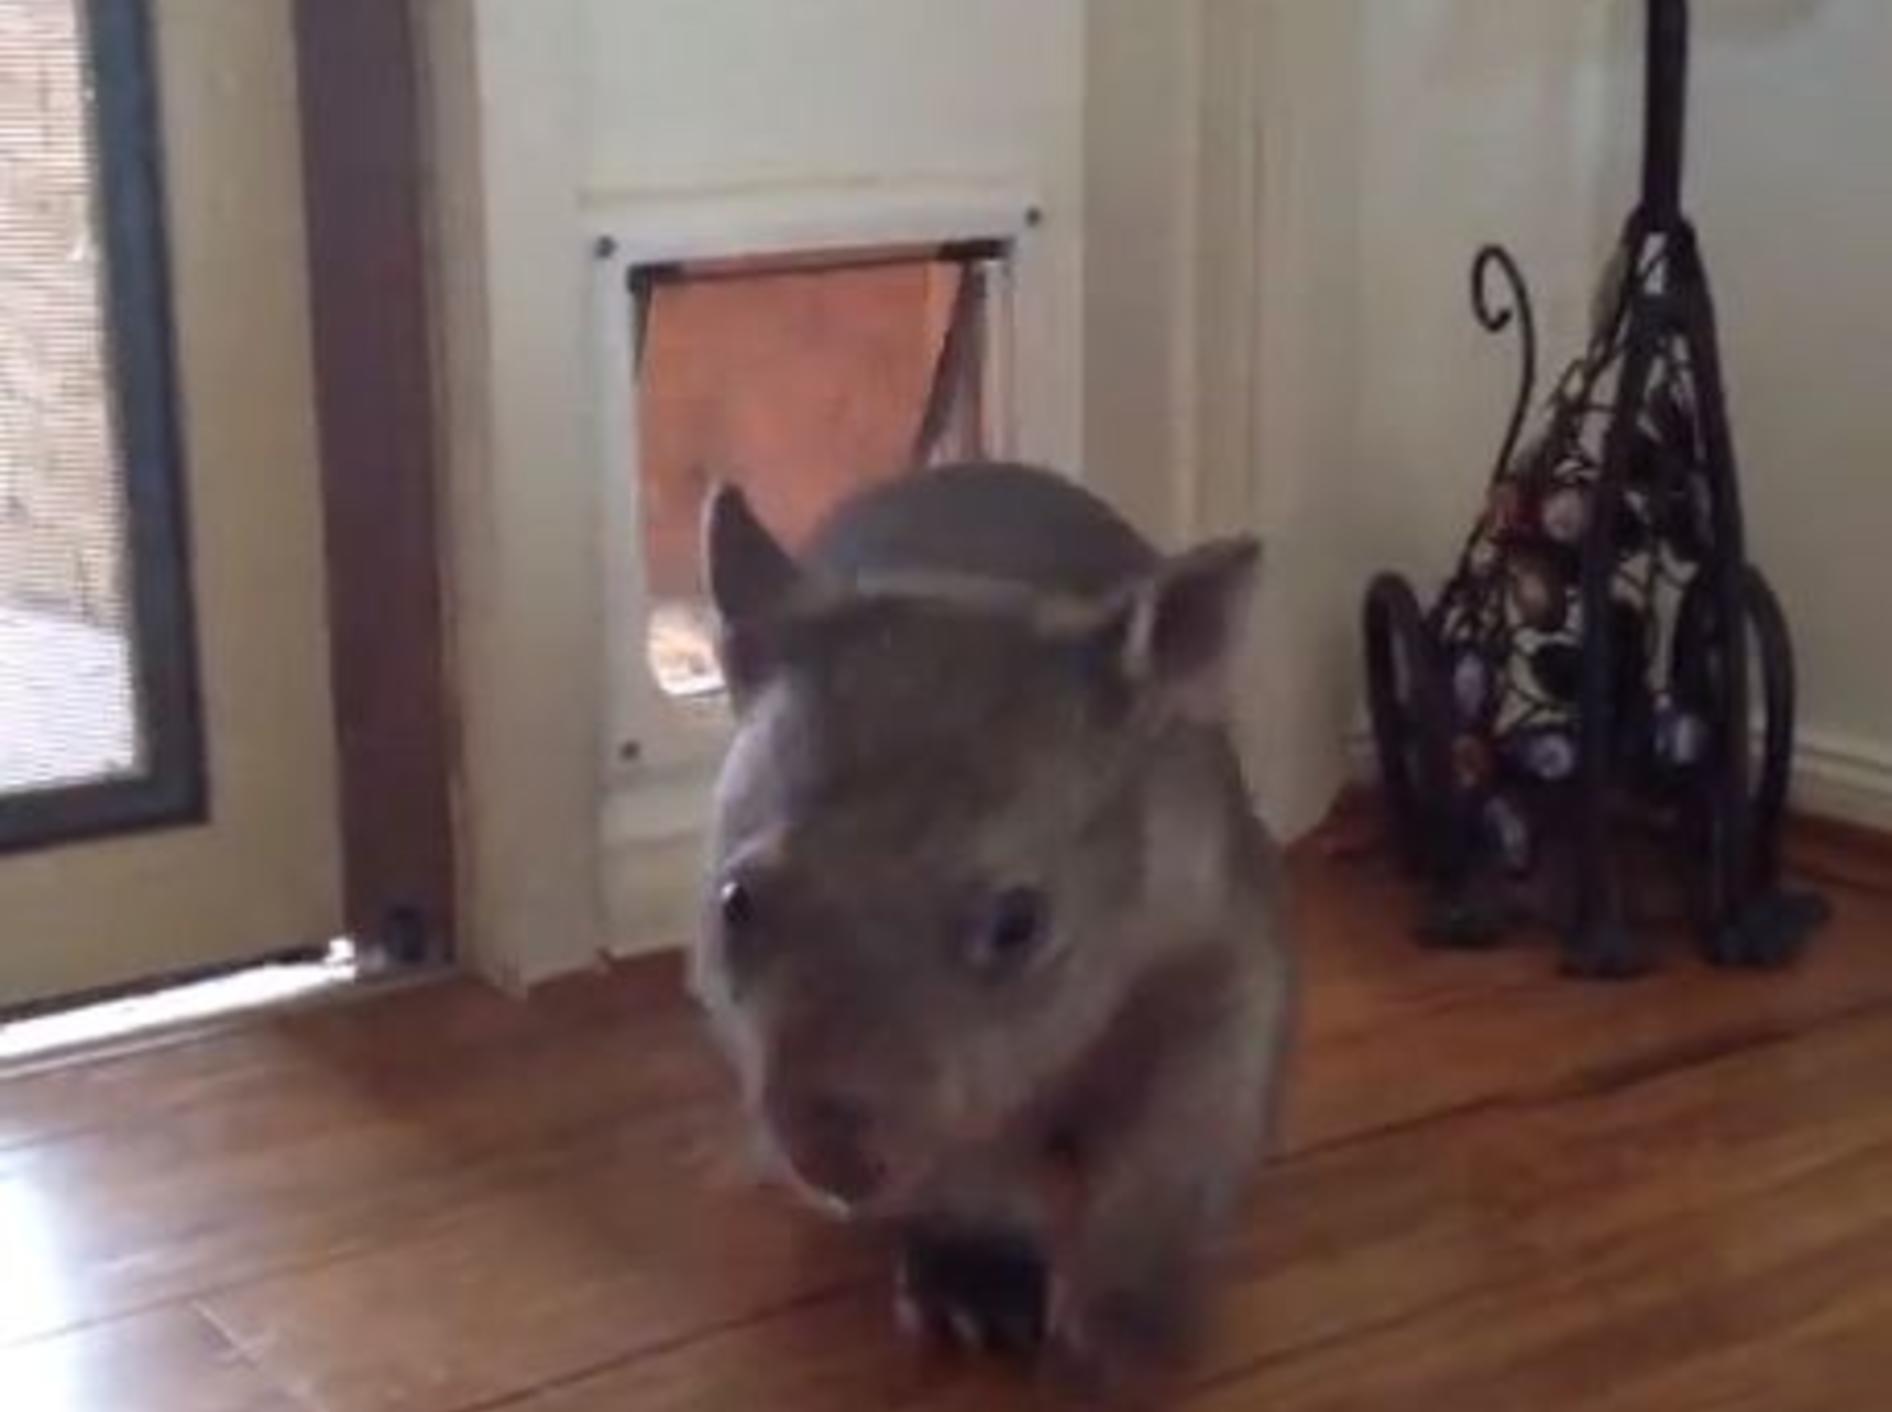 Ruby der Wombat kann die Katzenklappe benutzen - Bild: Youtube / Matt Hill